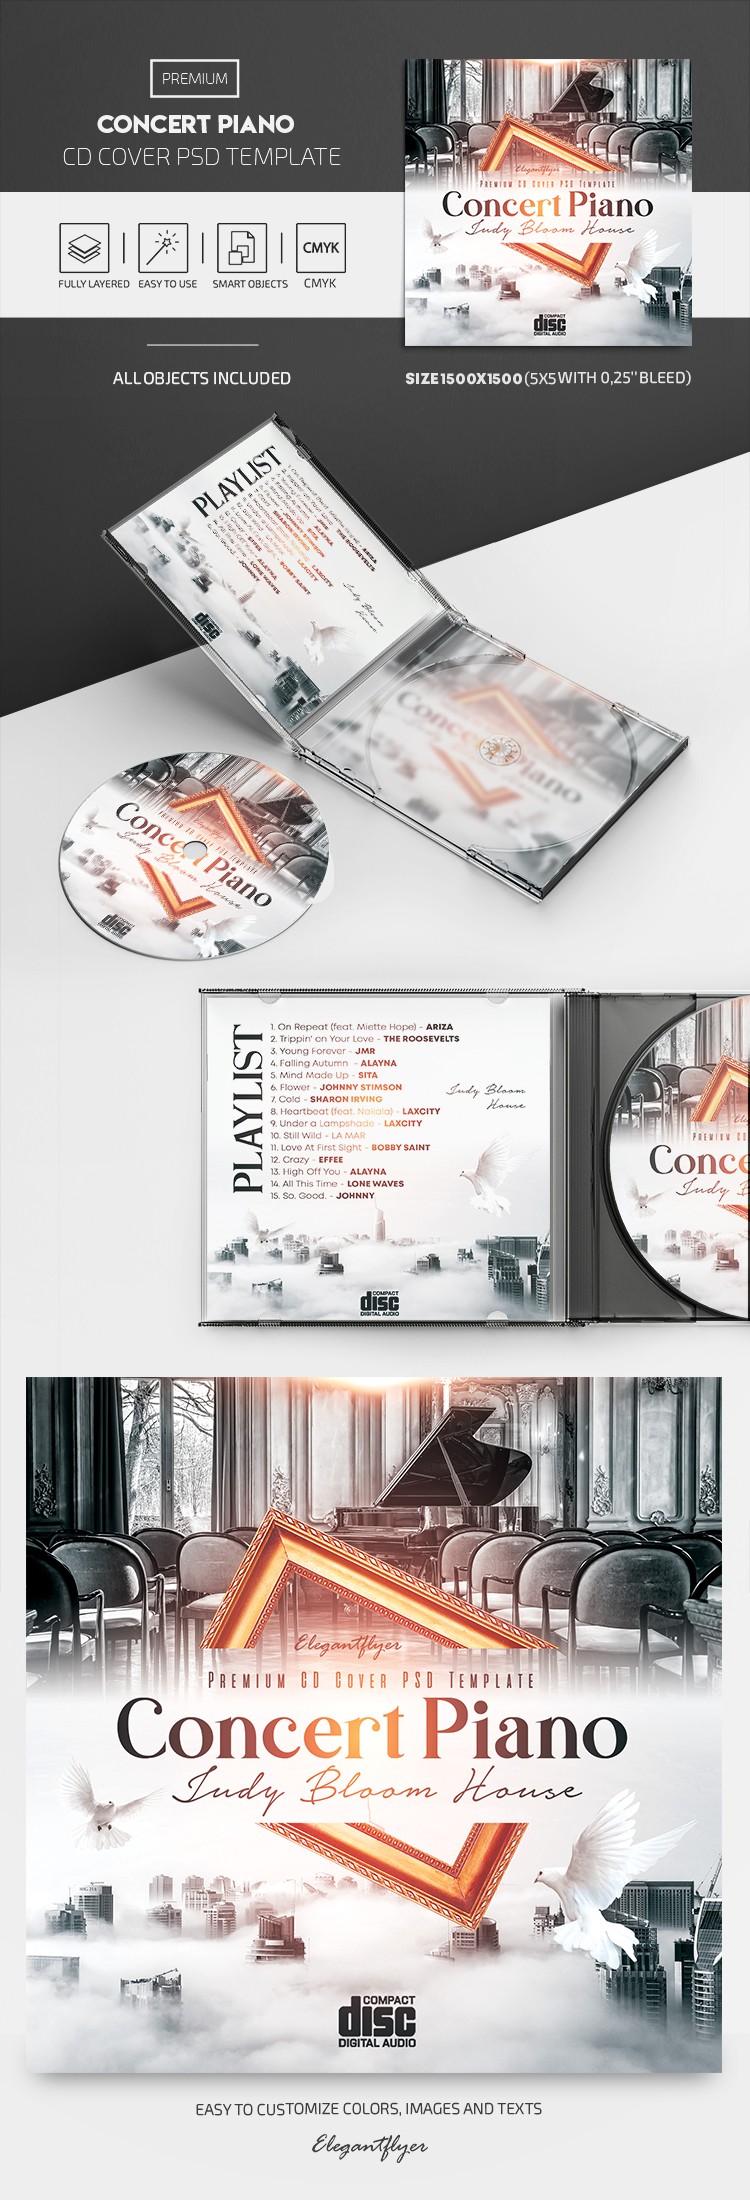 Copertina CD del concerto di pianoforte by ElegantFlyer